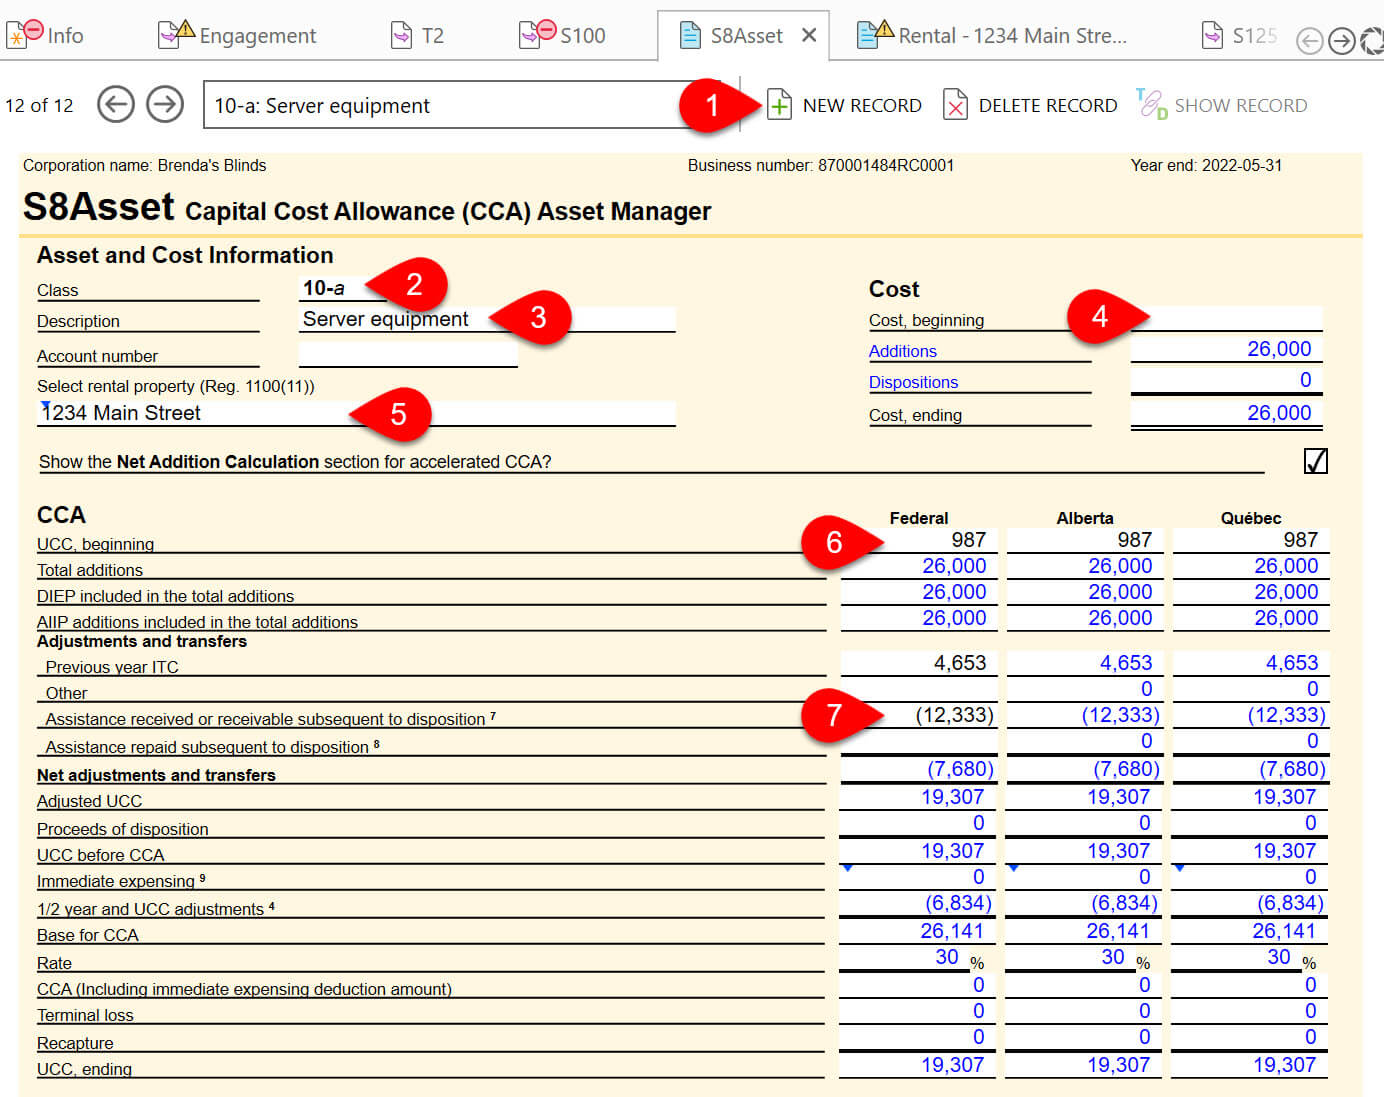 Screen Capture: S8Asset CCA Asset Manager